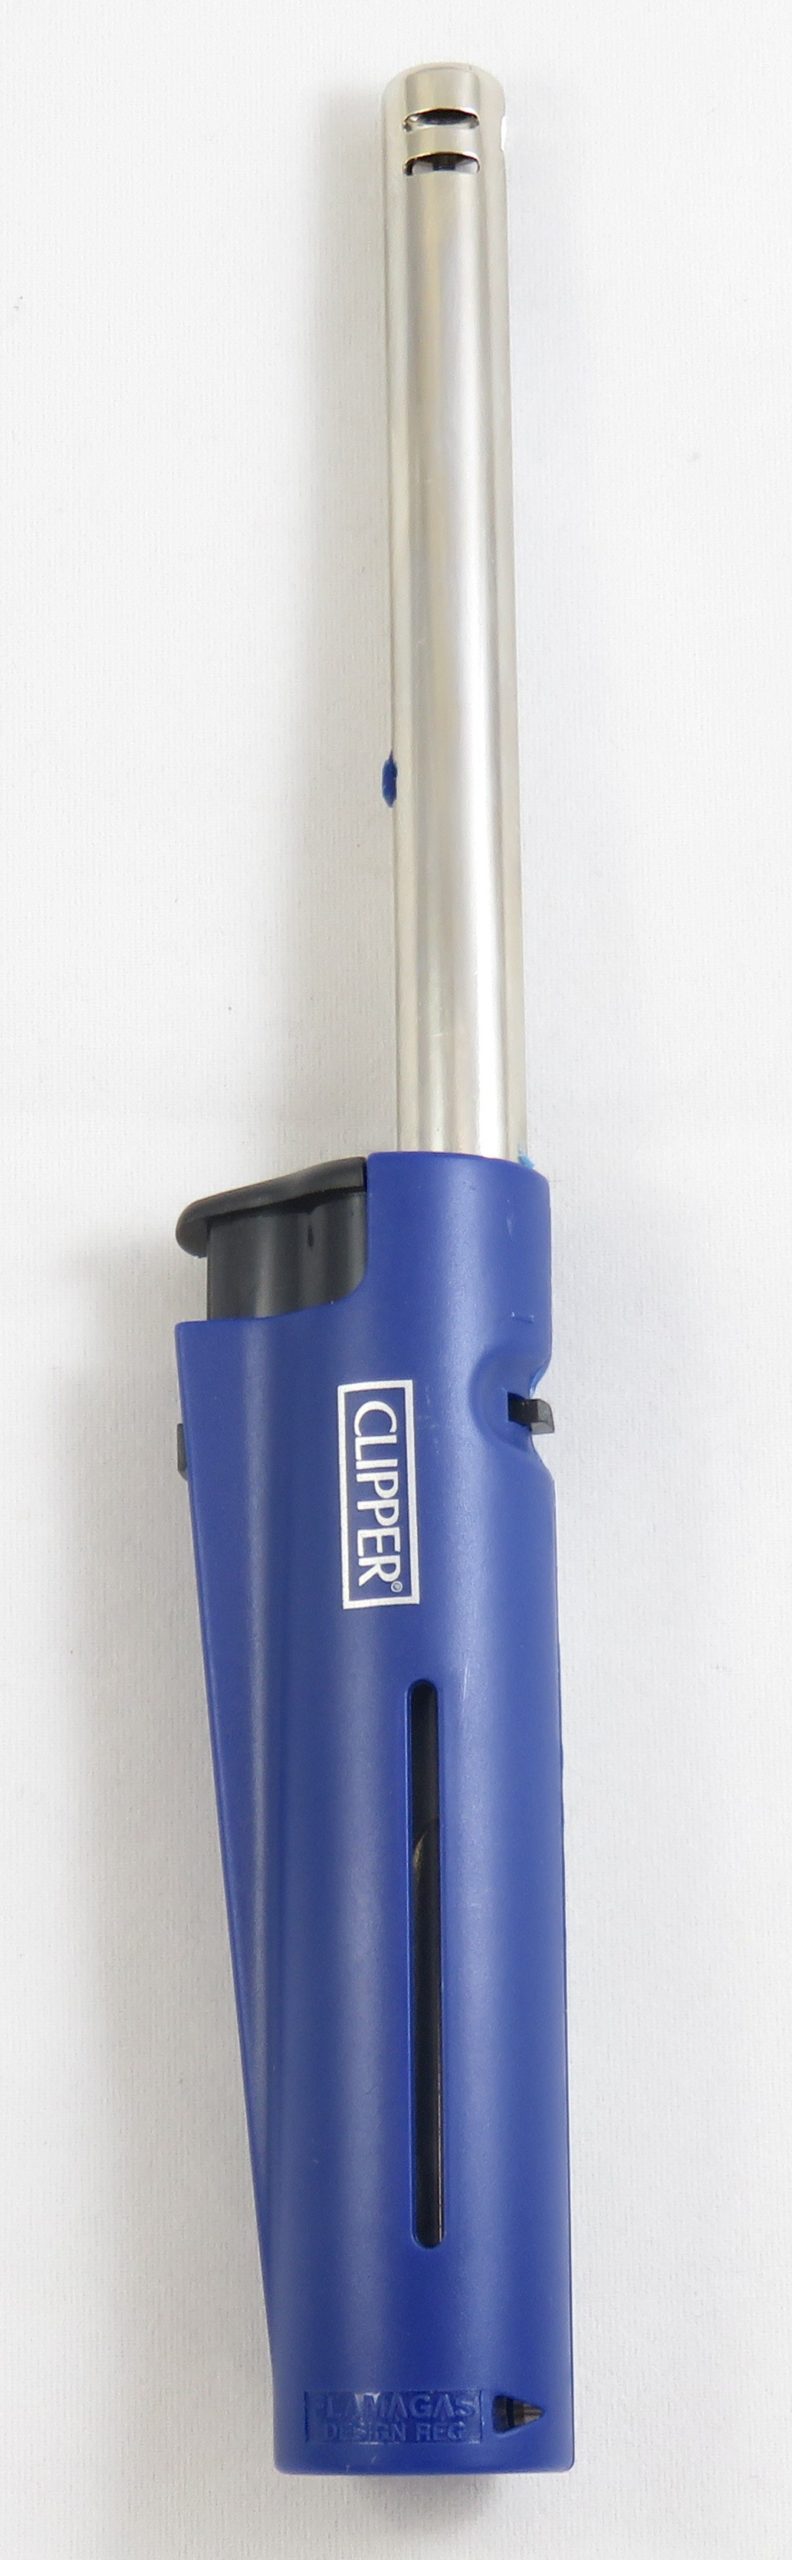 Fackelmann 14083 Allume gaz rechargeable avec flamme et verrouillage de  sécurité, Bleu, Noir, Plastique, Métal, 28,5 x 4,5 x 2,2 cm